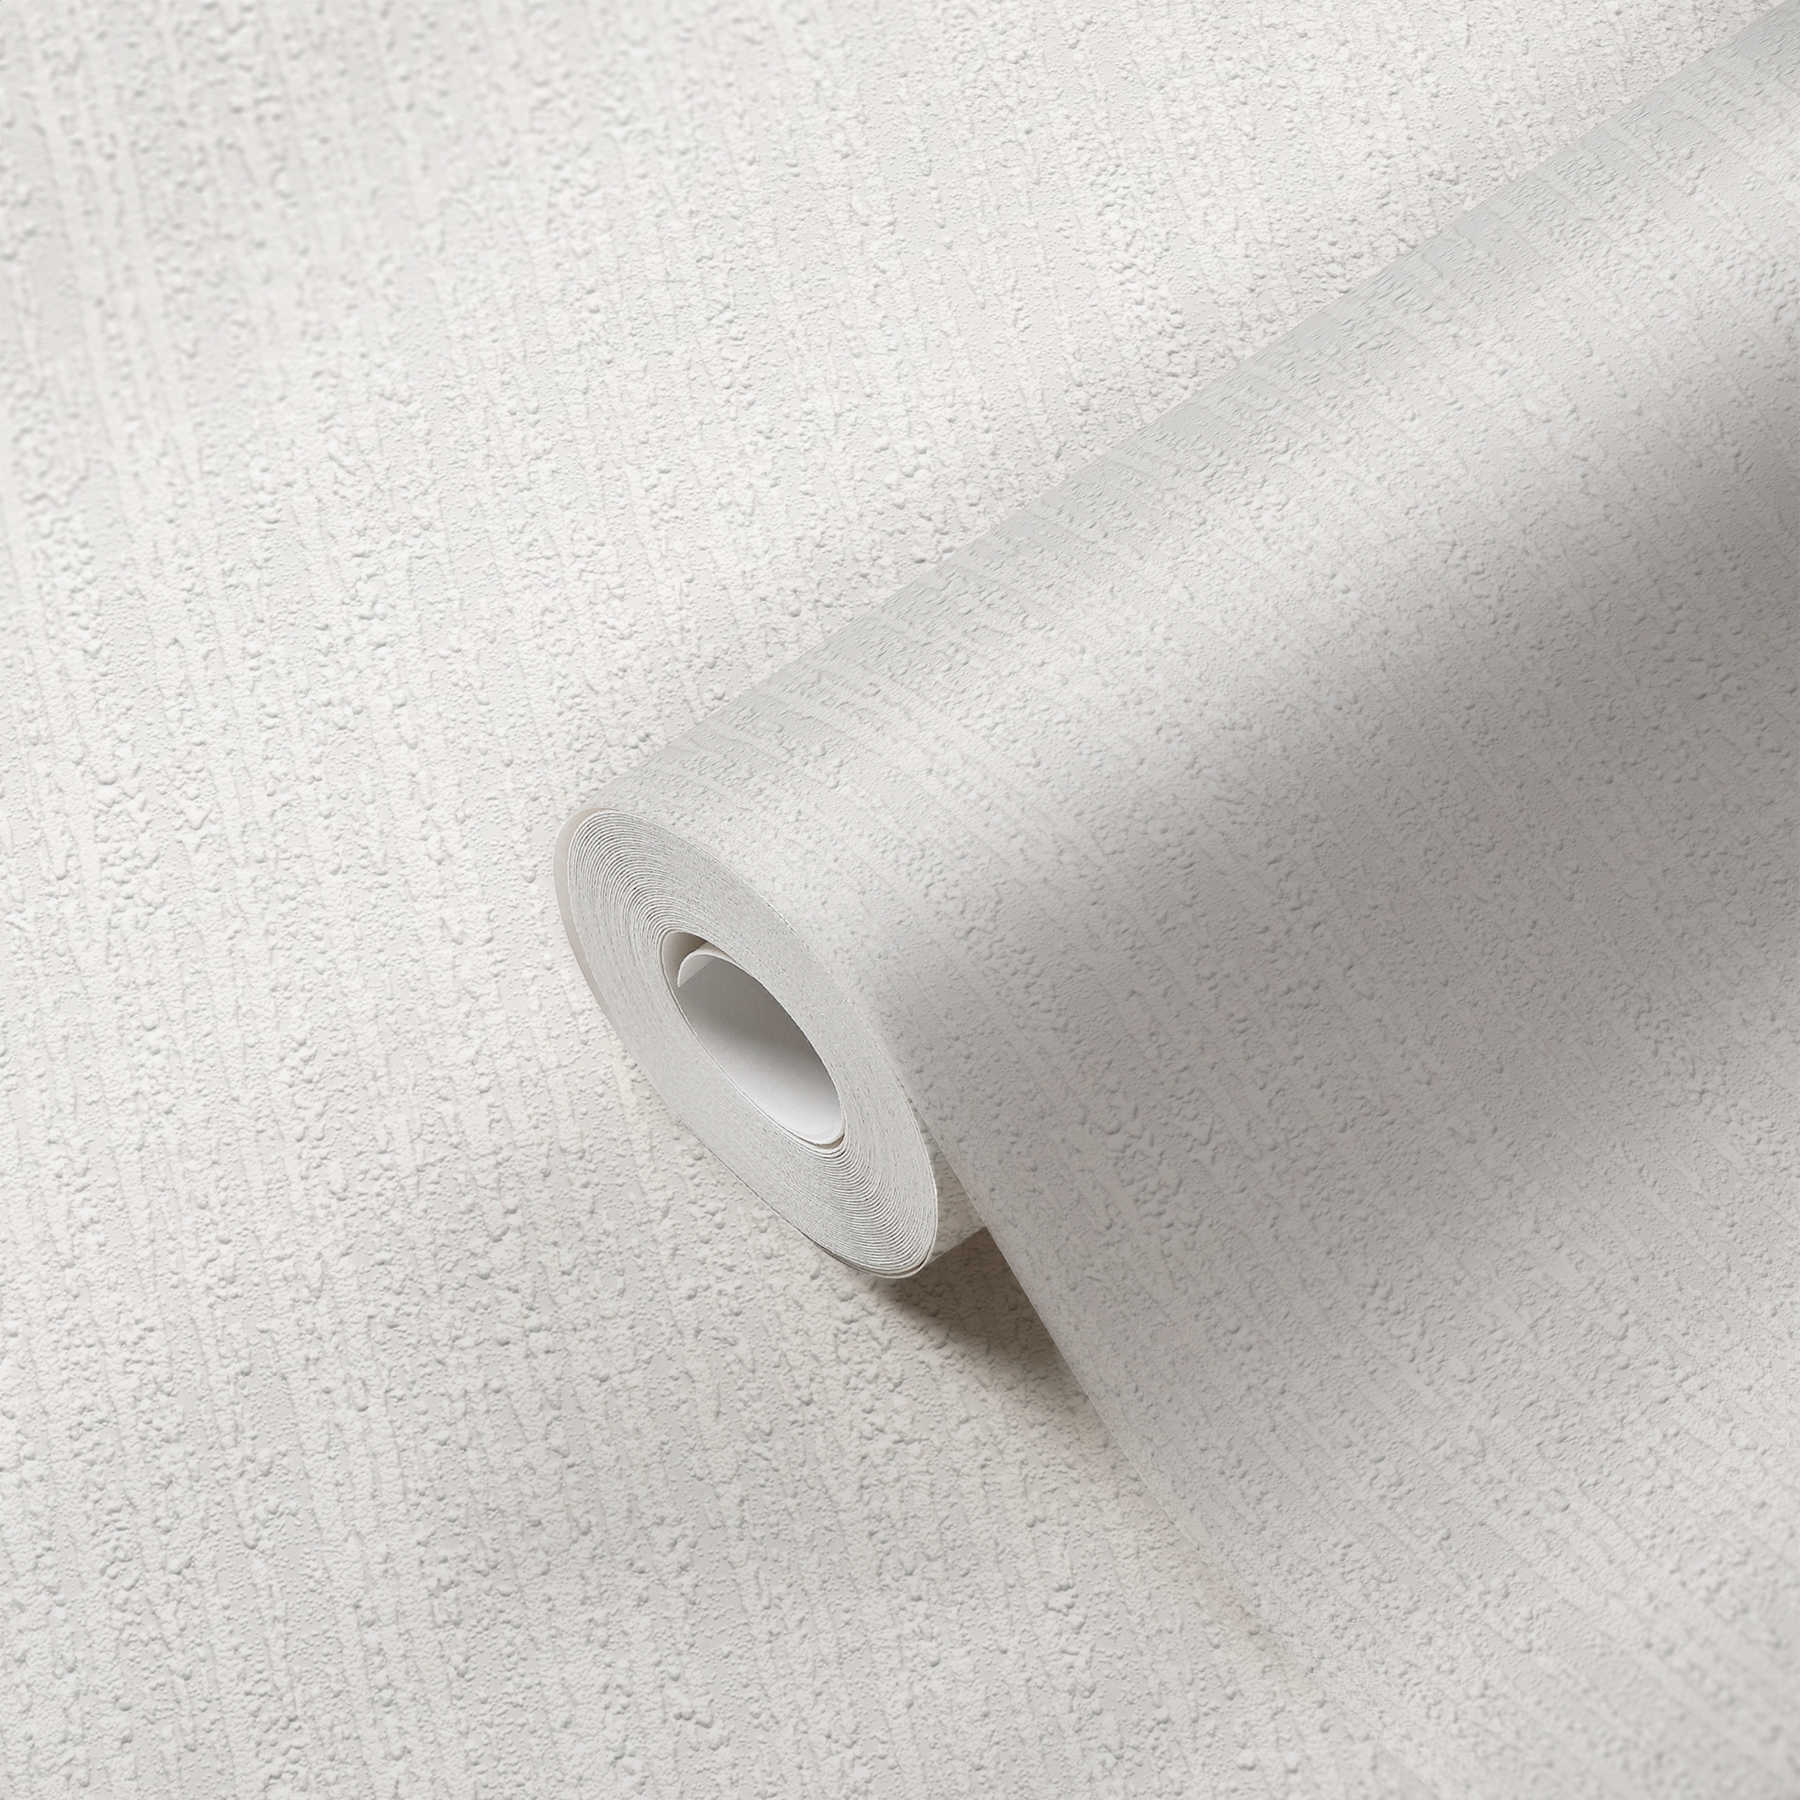             Papier peint blanc structuré aspect plâtre avec effet 3D - Blanc
        